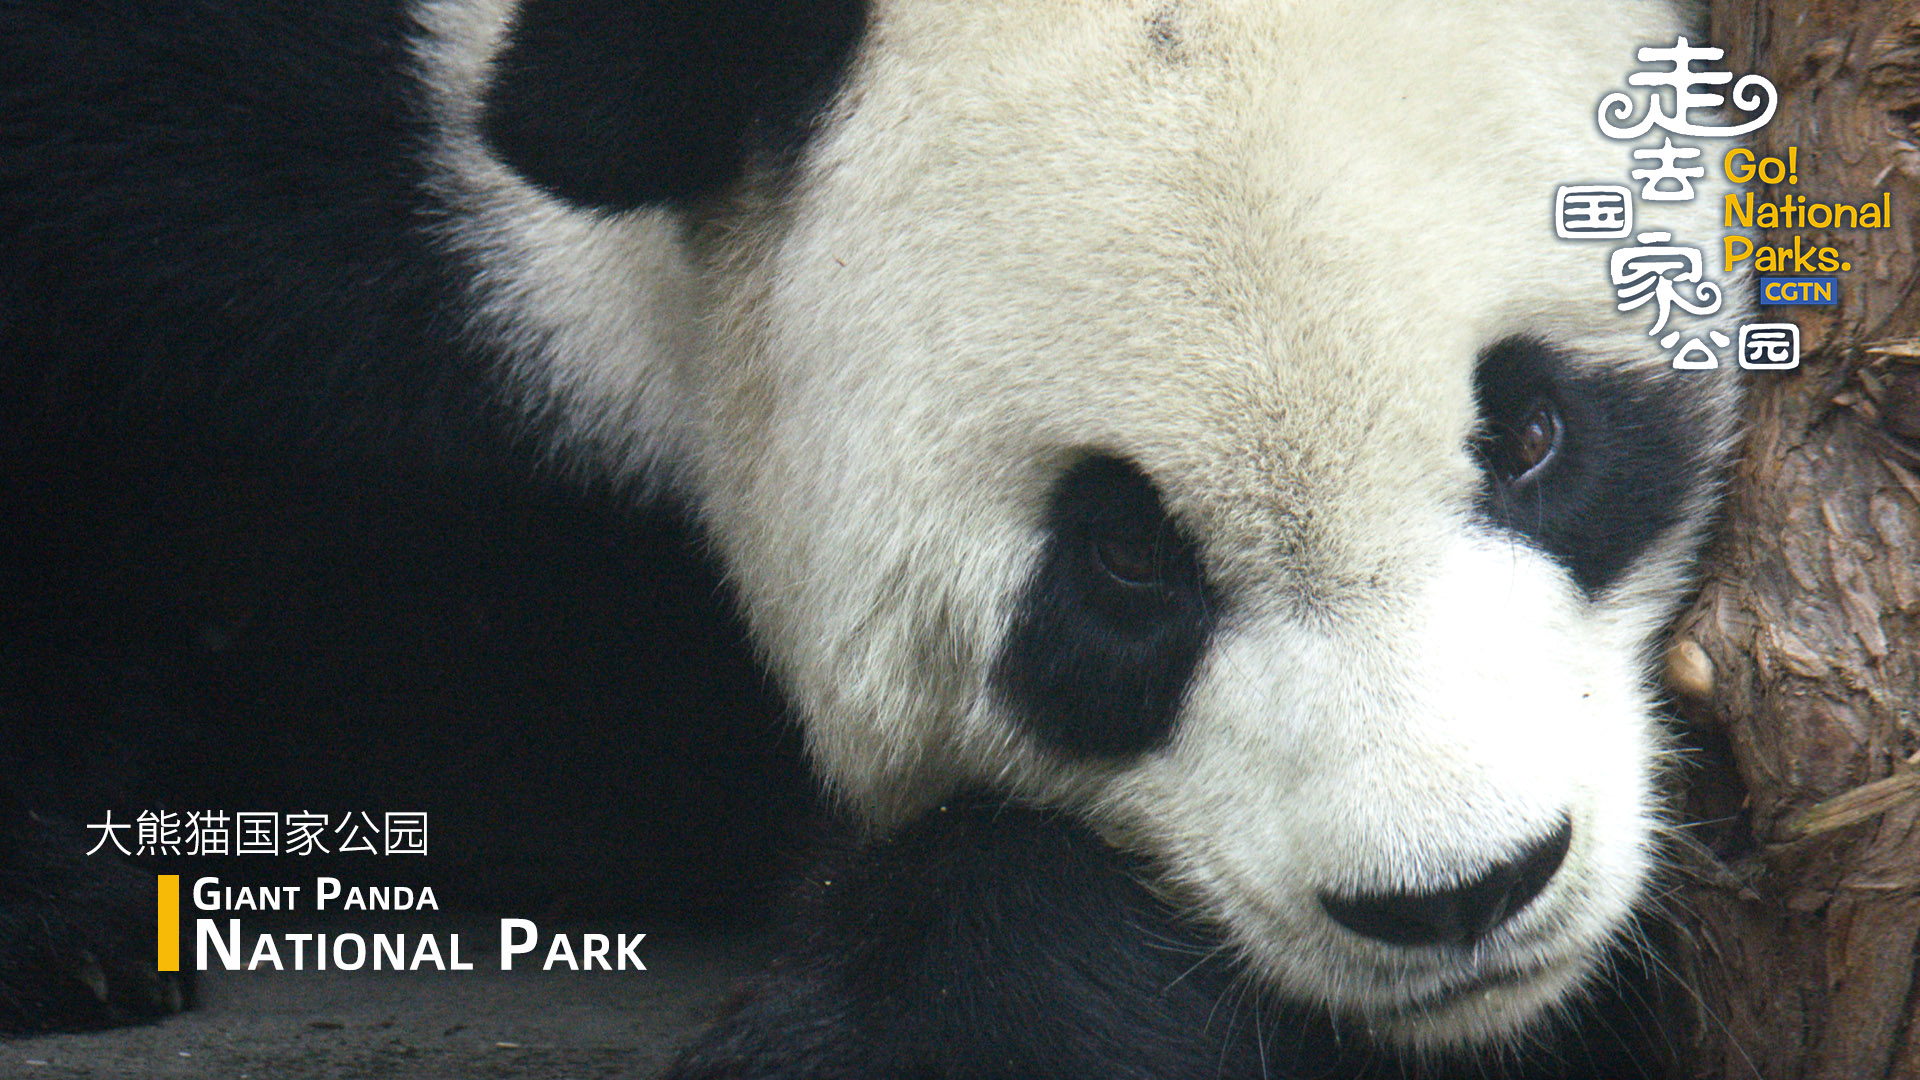 Go! The Giant Panda National Park - CGTN